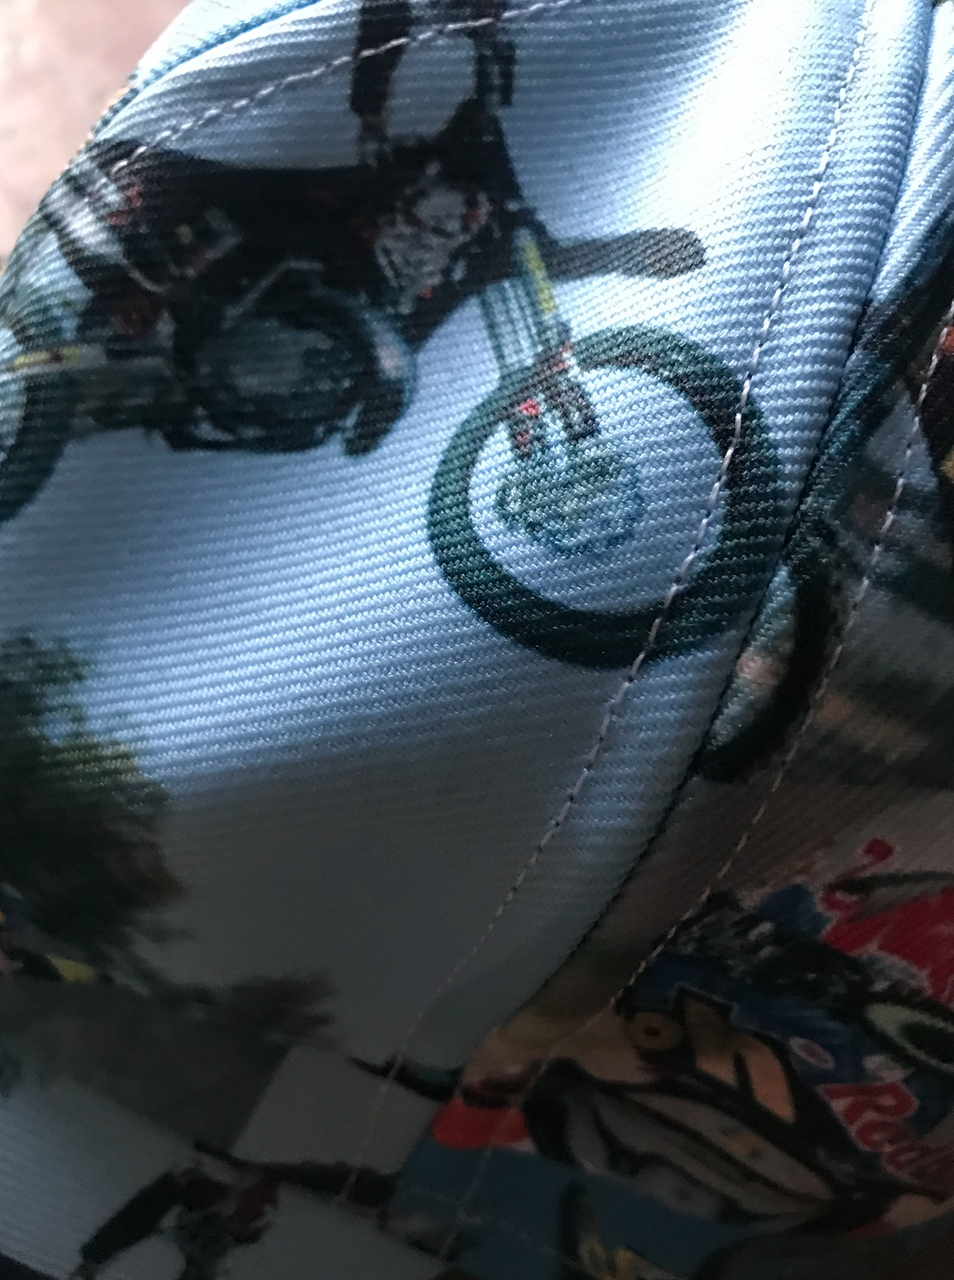 Motocross KiSS Baseball Cap - MotoX Dirt Bike - Motorbike - Tyler Durden Inspired - men's gift, present for biker - Honda